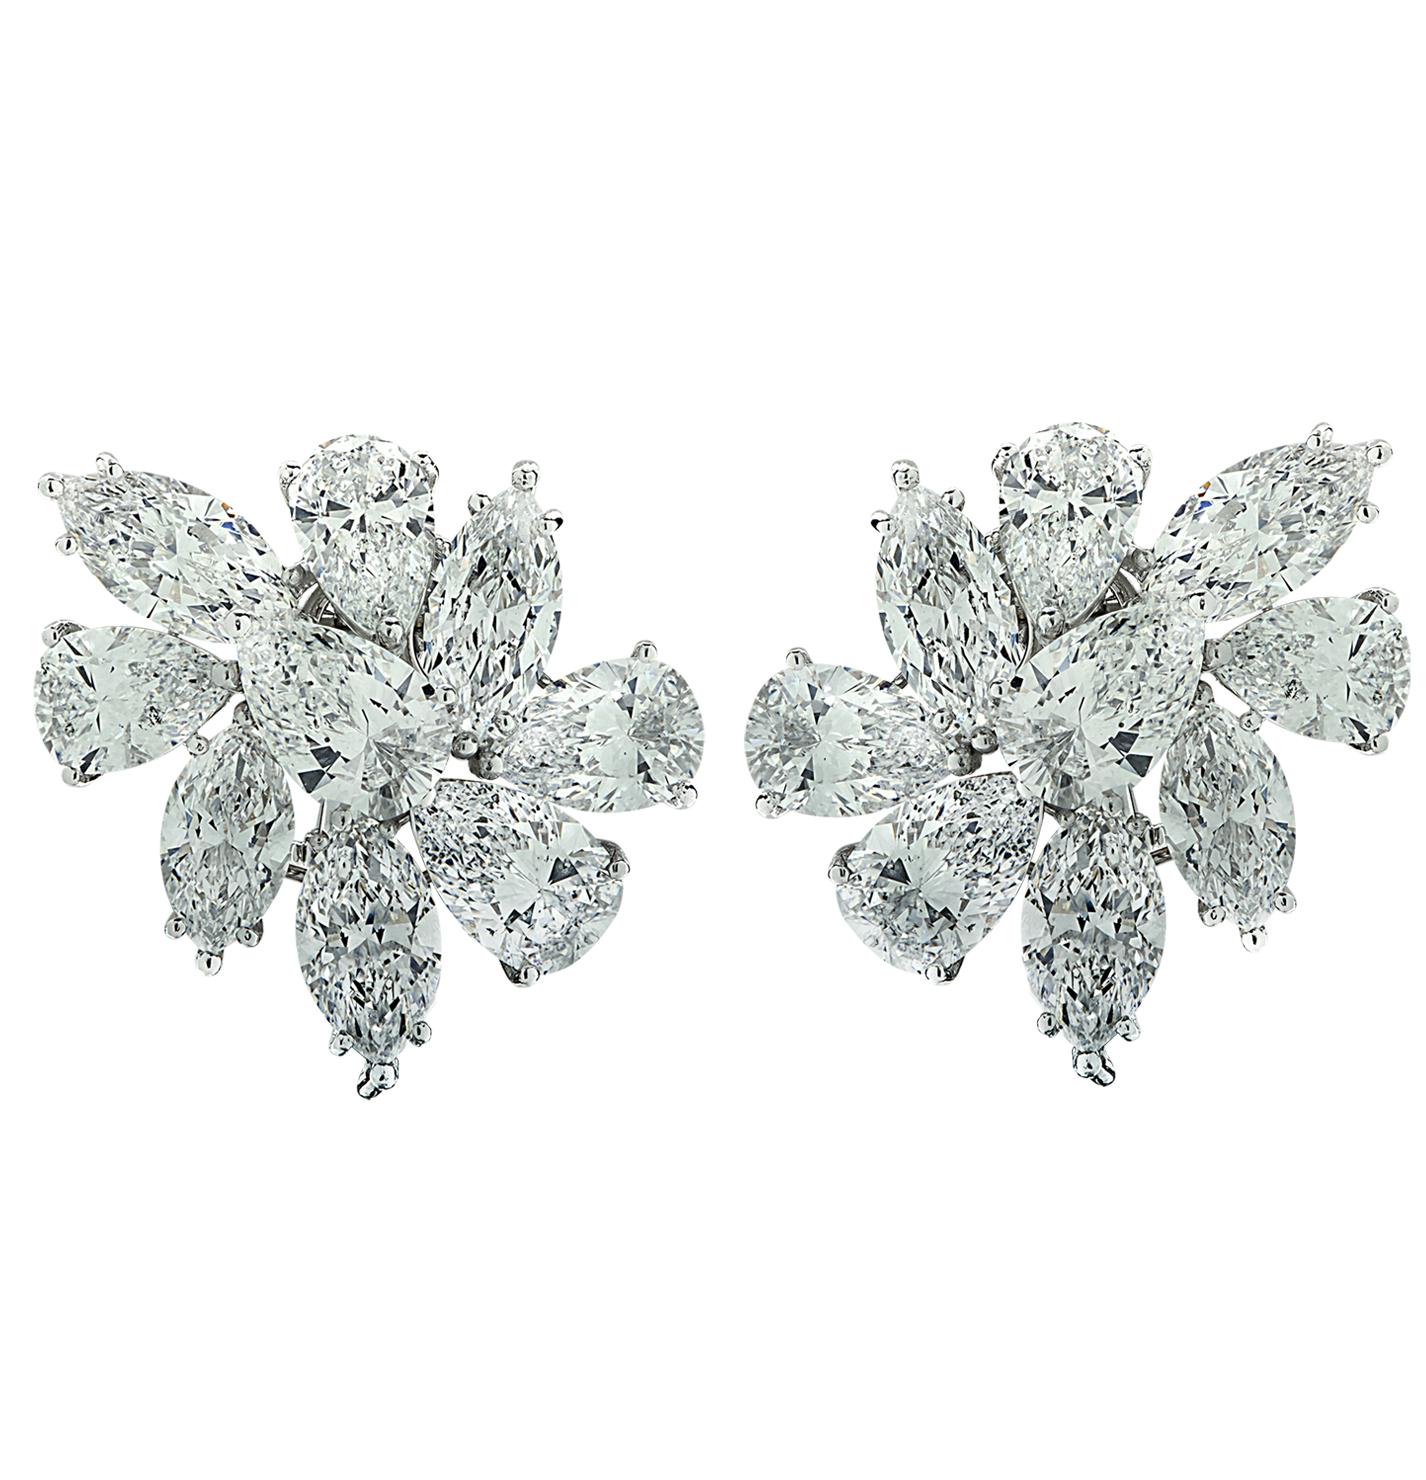 Sensationelle Vivid Diamonds Cluster Earrings, handgefertigt aus Platin, mit 18 gemischten Diamanten im Birnen- und Marquise-Schliff mit einem Gesamtgewicht von ca. 25,02 Karat, Farbe D-E, Reinheit SI. Jeder Diamant wurde sorgfältig ausgewählt,